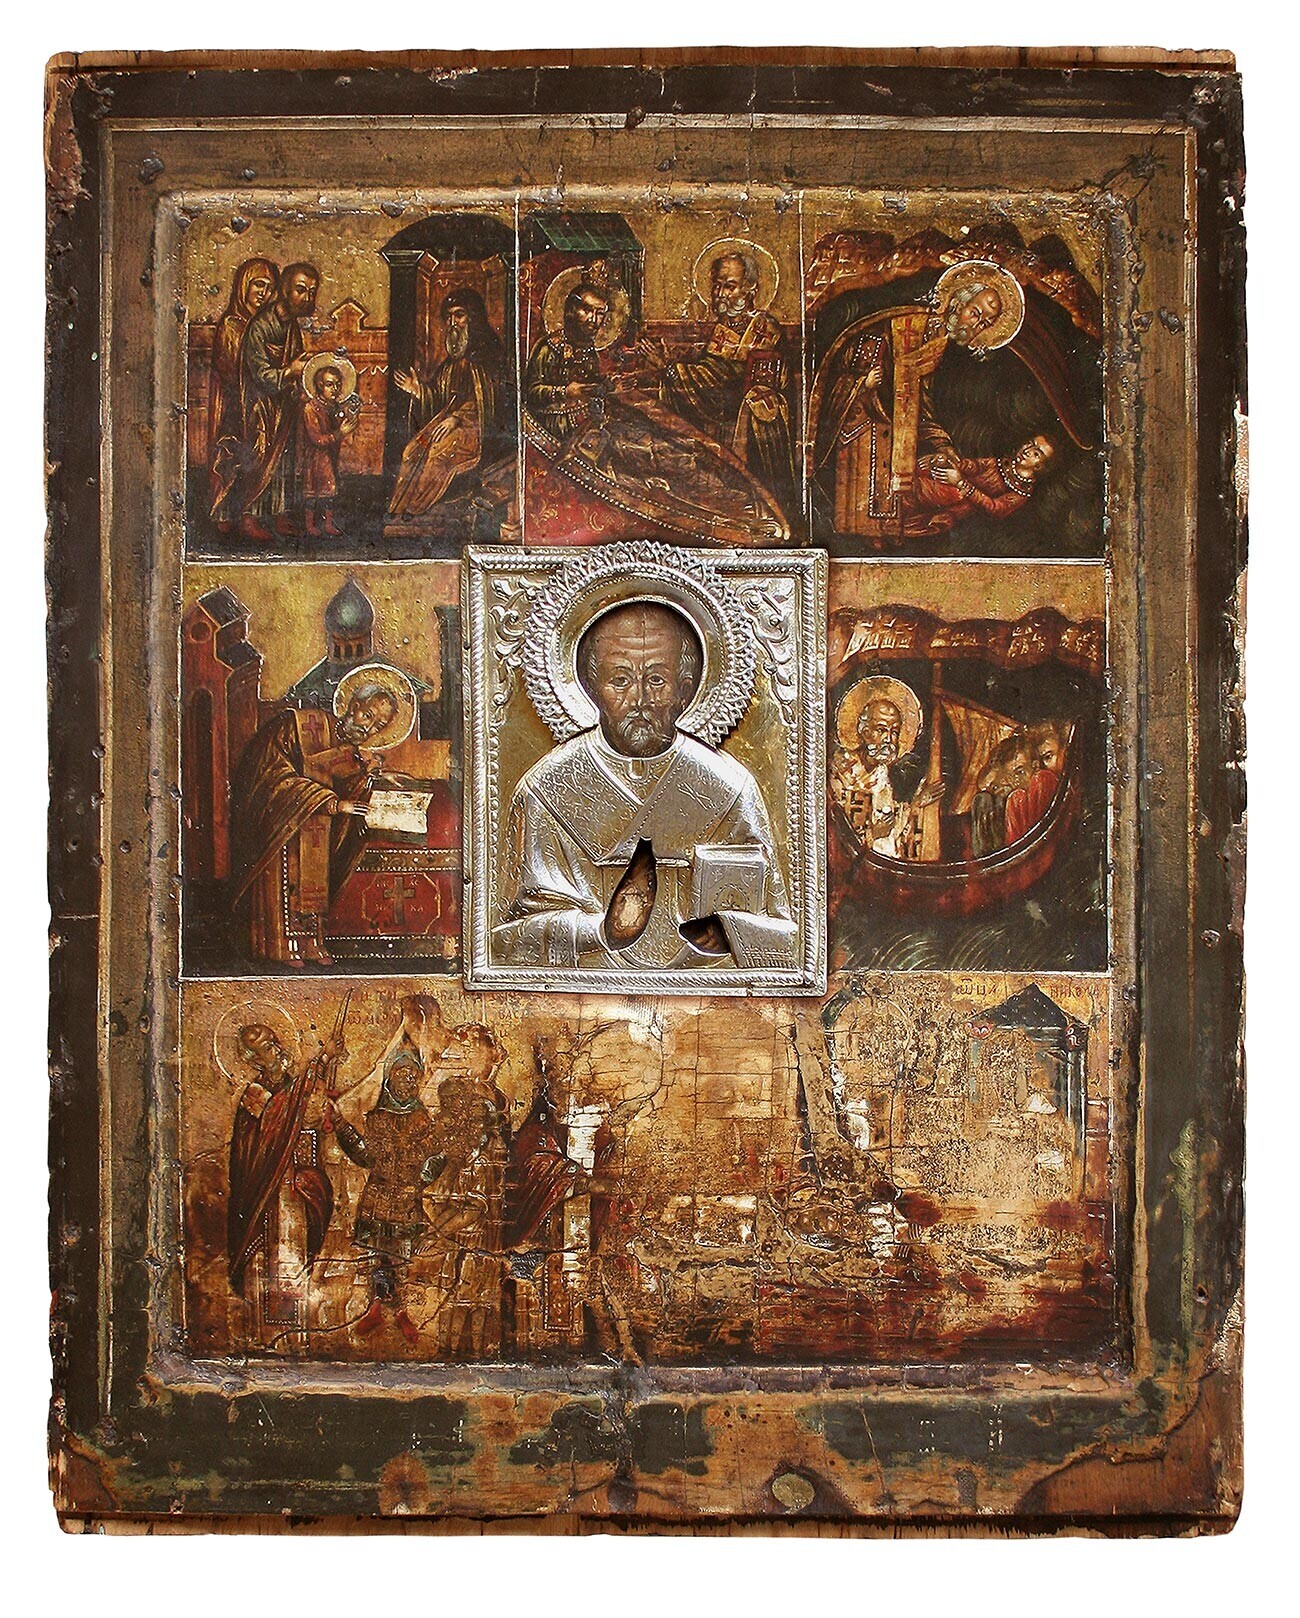 Ícone de Velikoretsk de Nicolau, o Maravilhoso, do século 16 (Catedral de São Serafim de Kírov)
